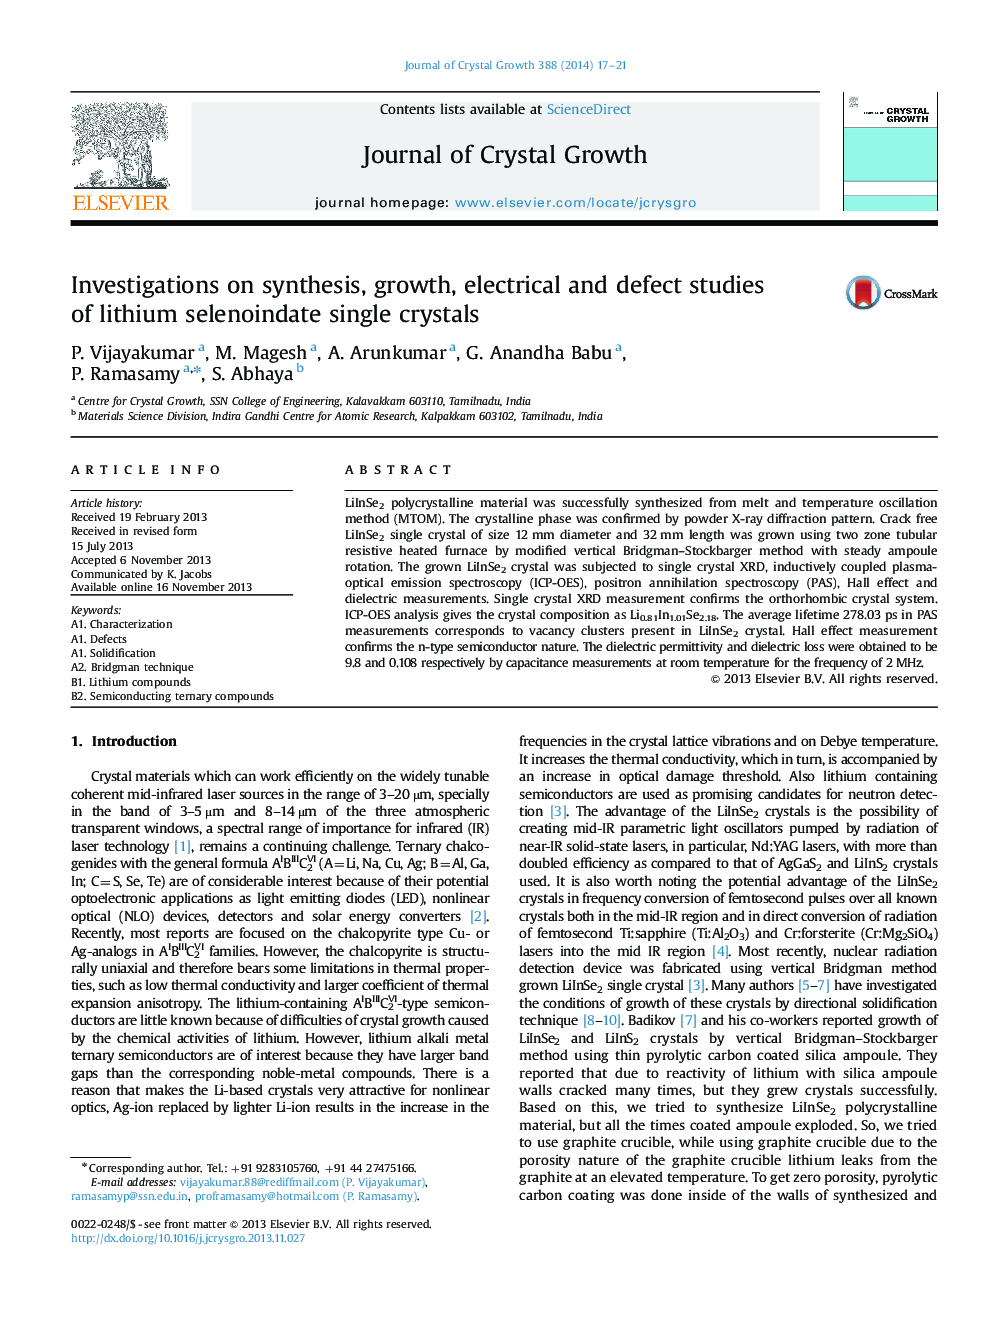 تحقیقات در مورد سنتز، رشد، مطالعات الکتریکی و نقص از کریستالهای لیتیوم سلنوئیدات 